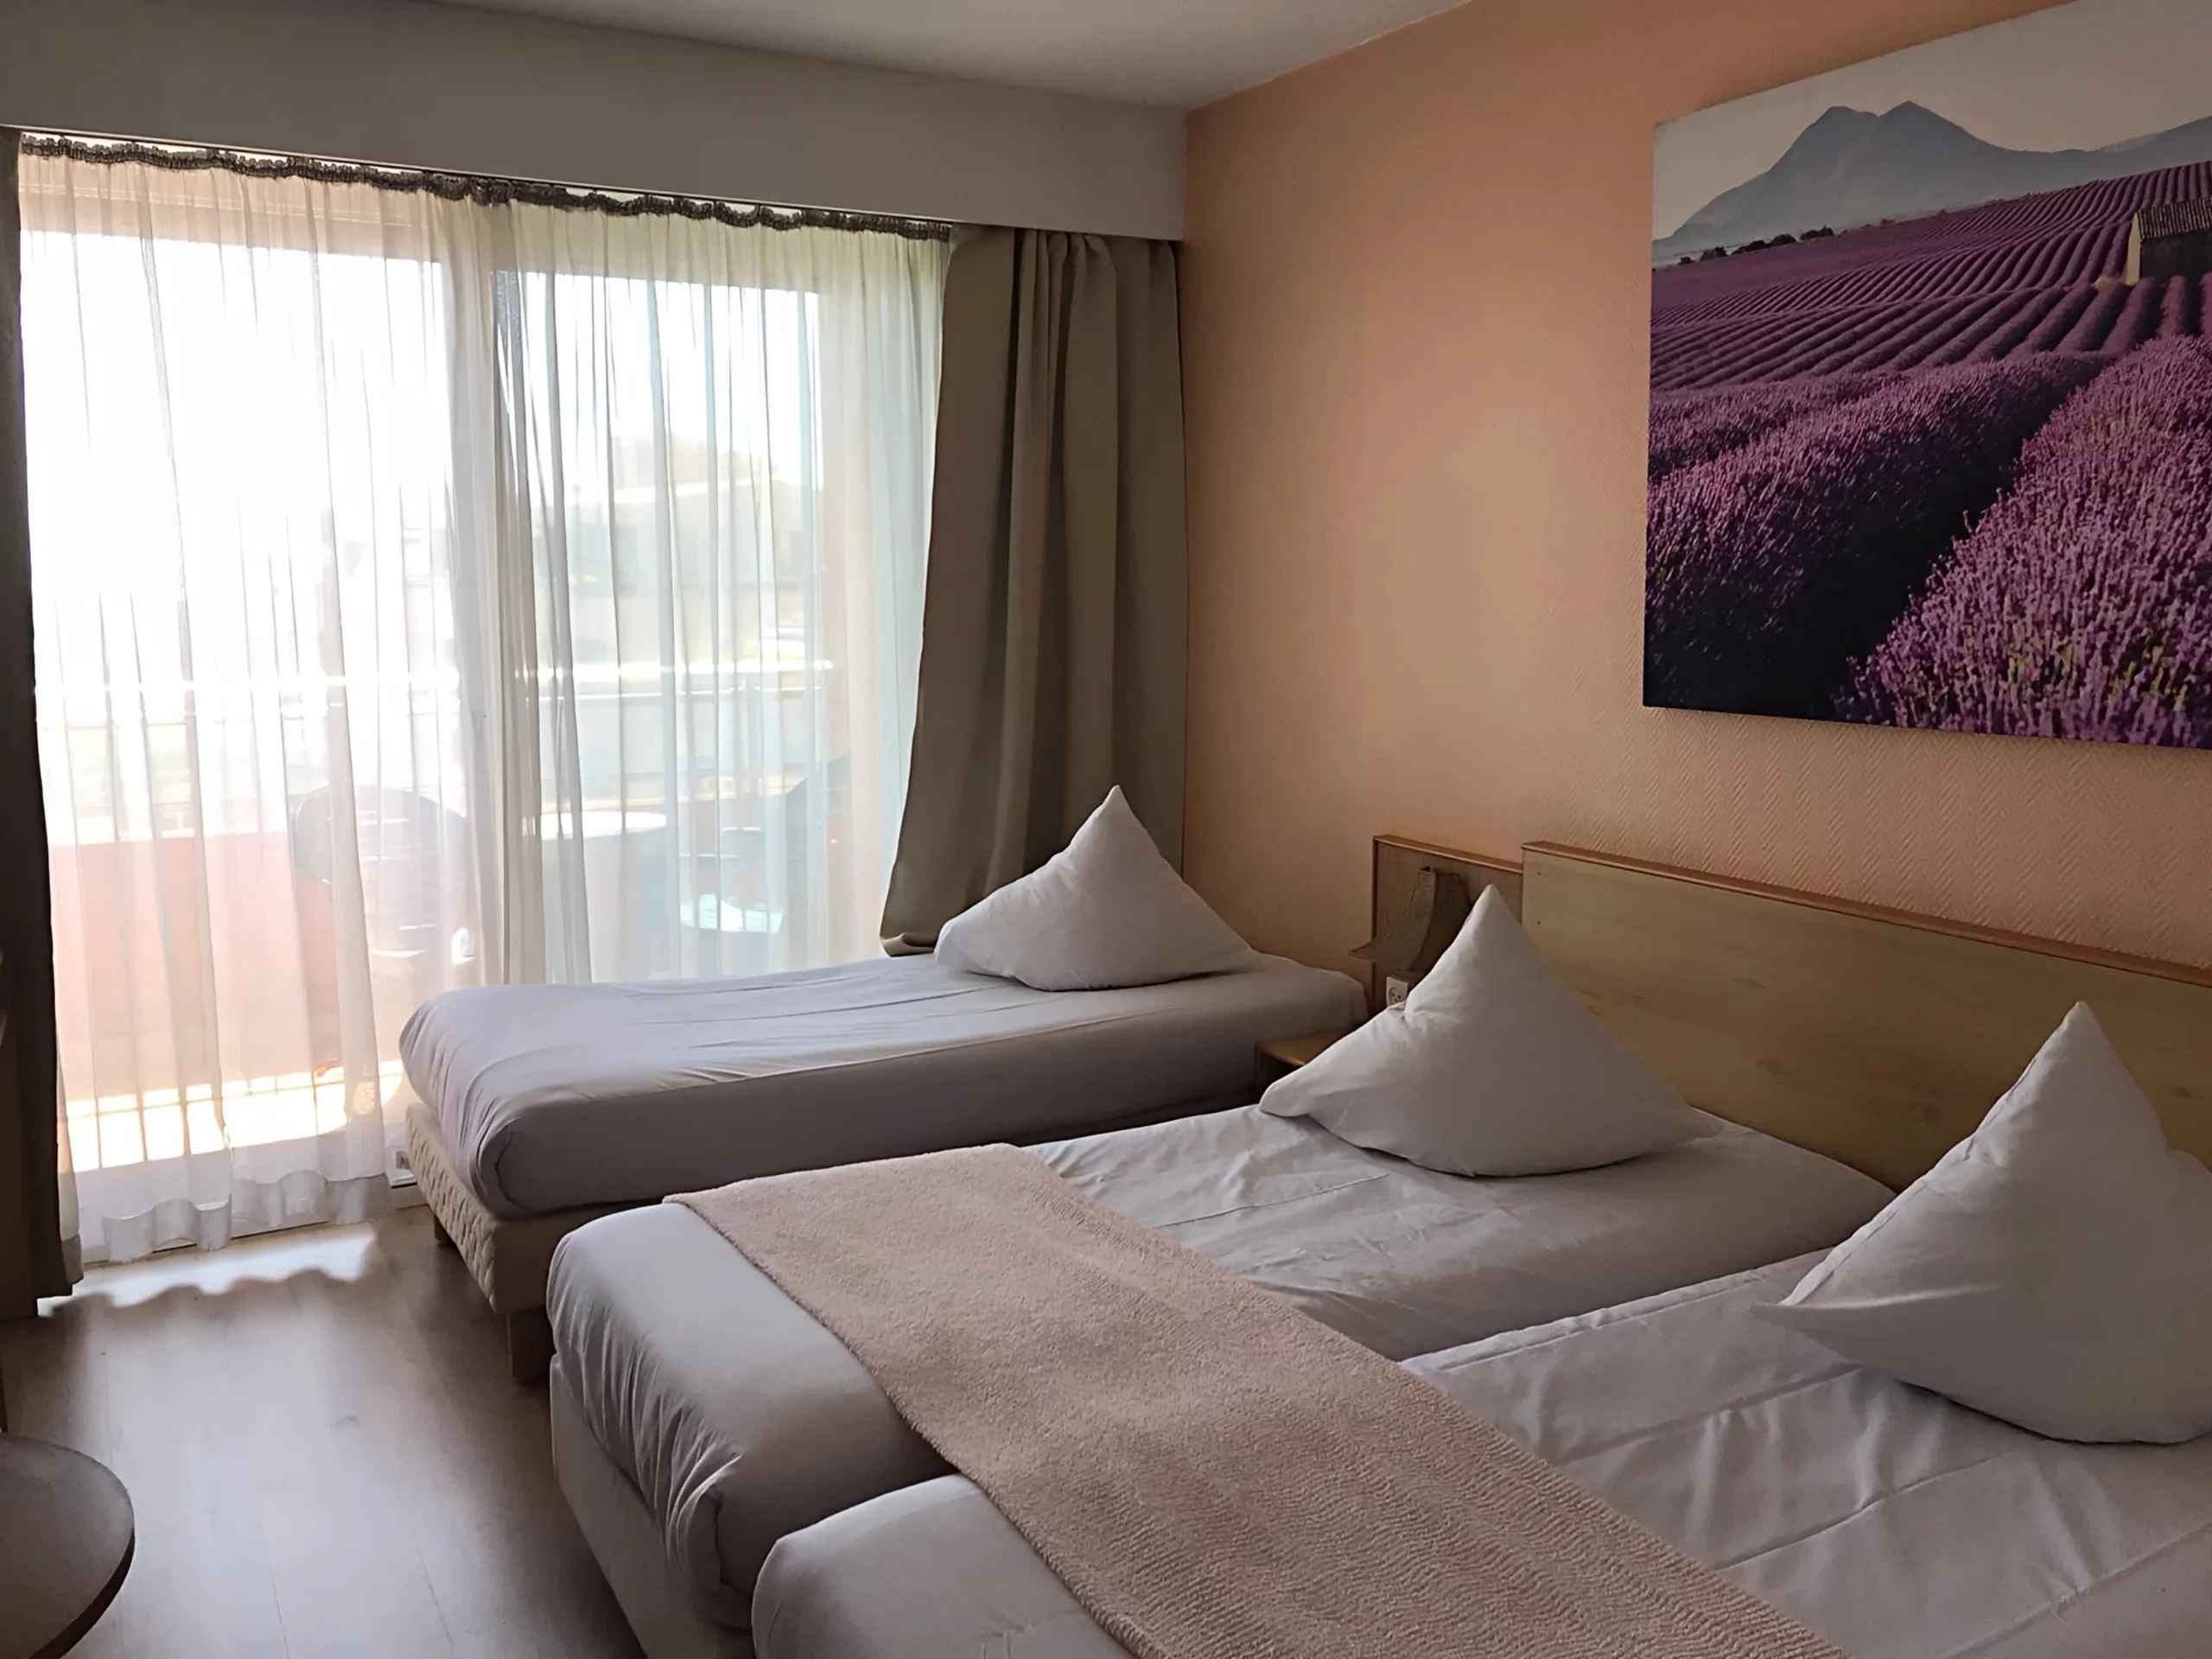 Chambres avec lits pour 3 personnes hôtel panorama grasse